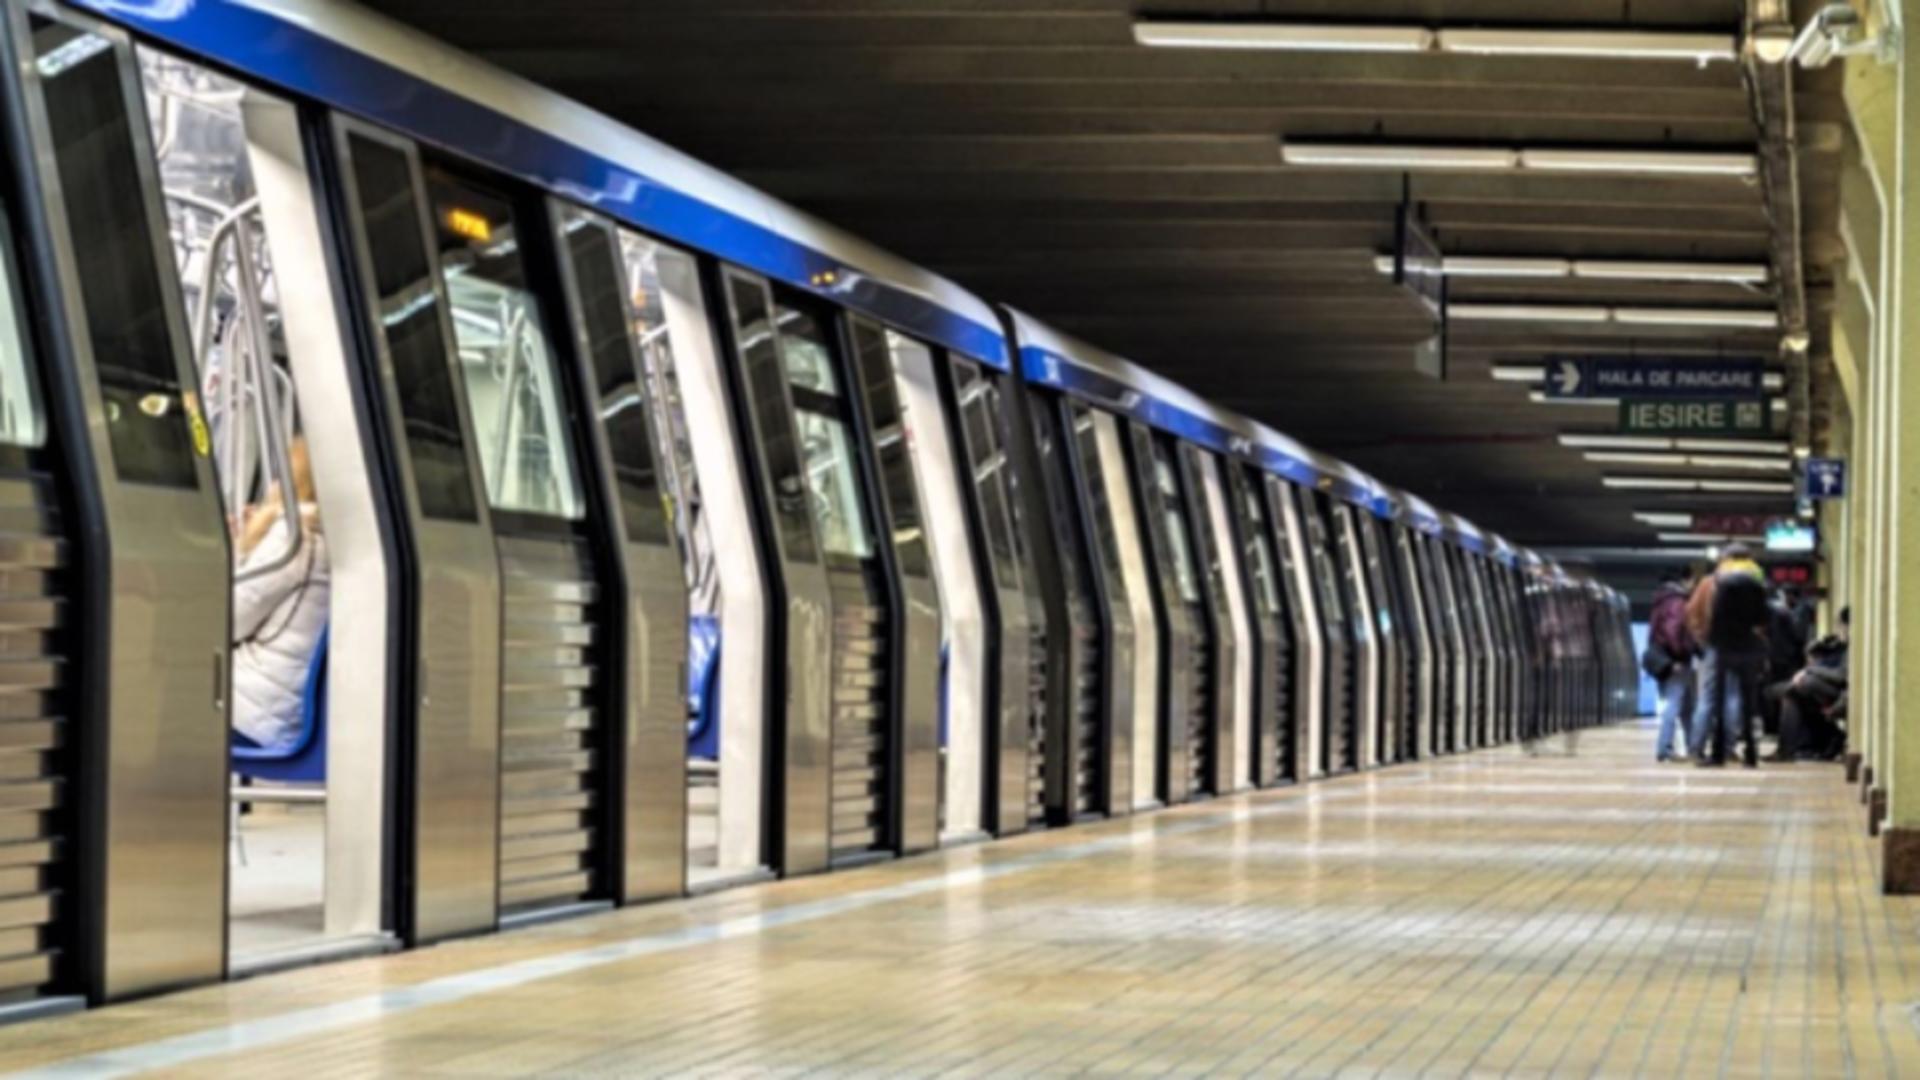 Primul tren de metrou fabricat în Brazilia a ajuns în Depoul din Berceni. Când va intra în circulație: anunțul Metrorex/ Arhivă foto